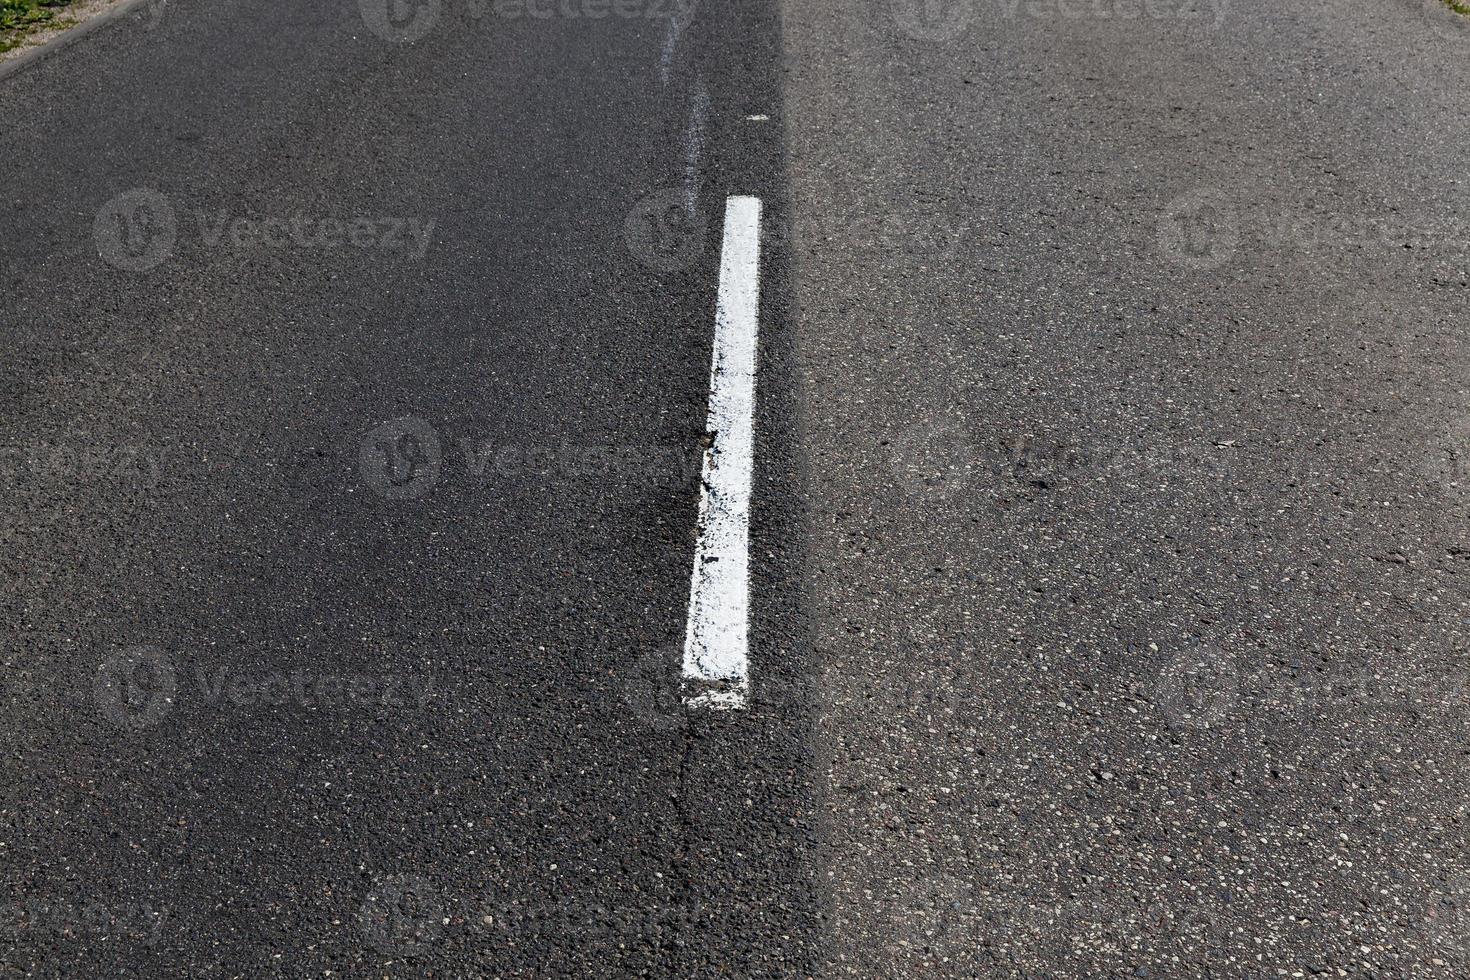 route goudronnée avec marquage routier blanc pour la gestion des transports photo